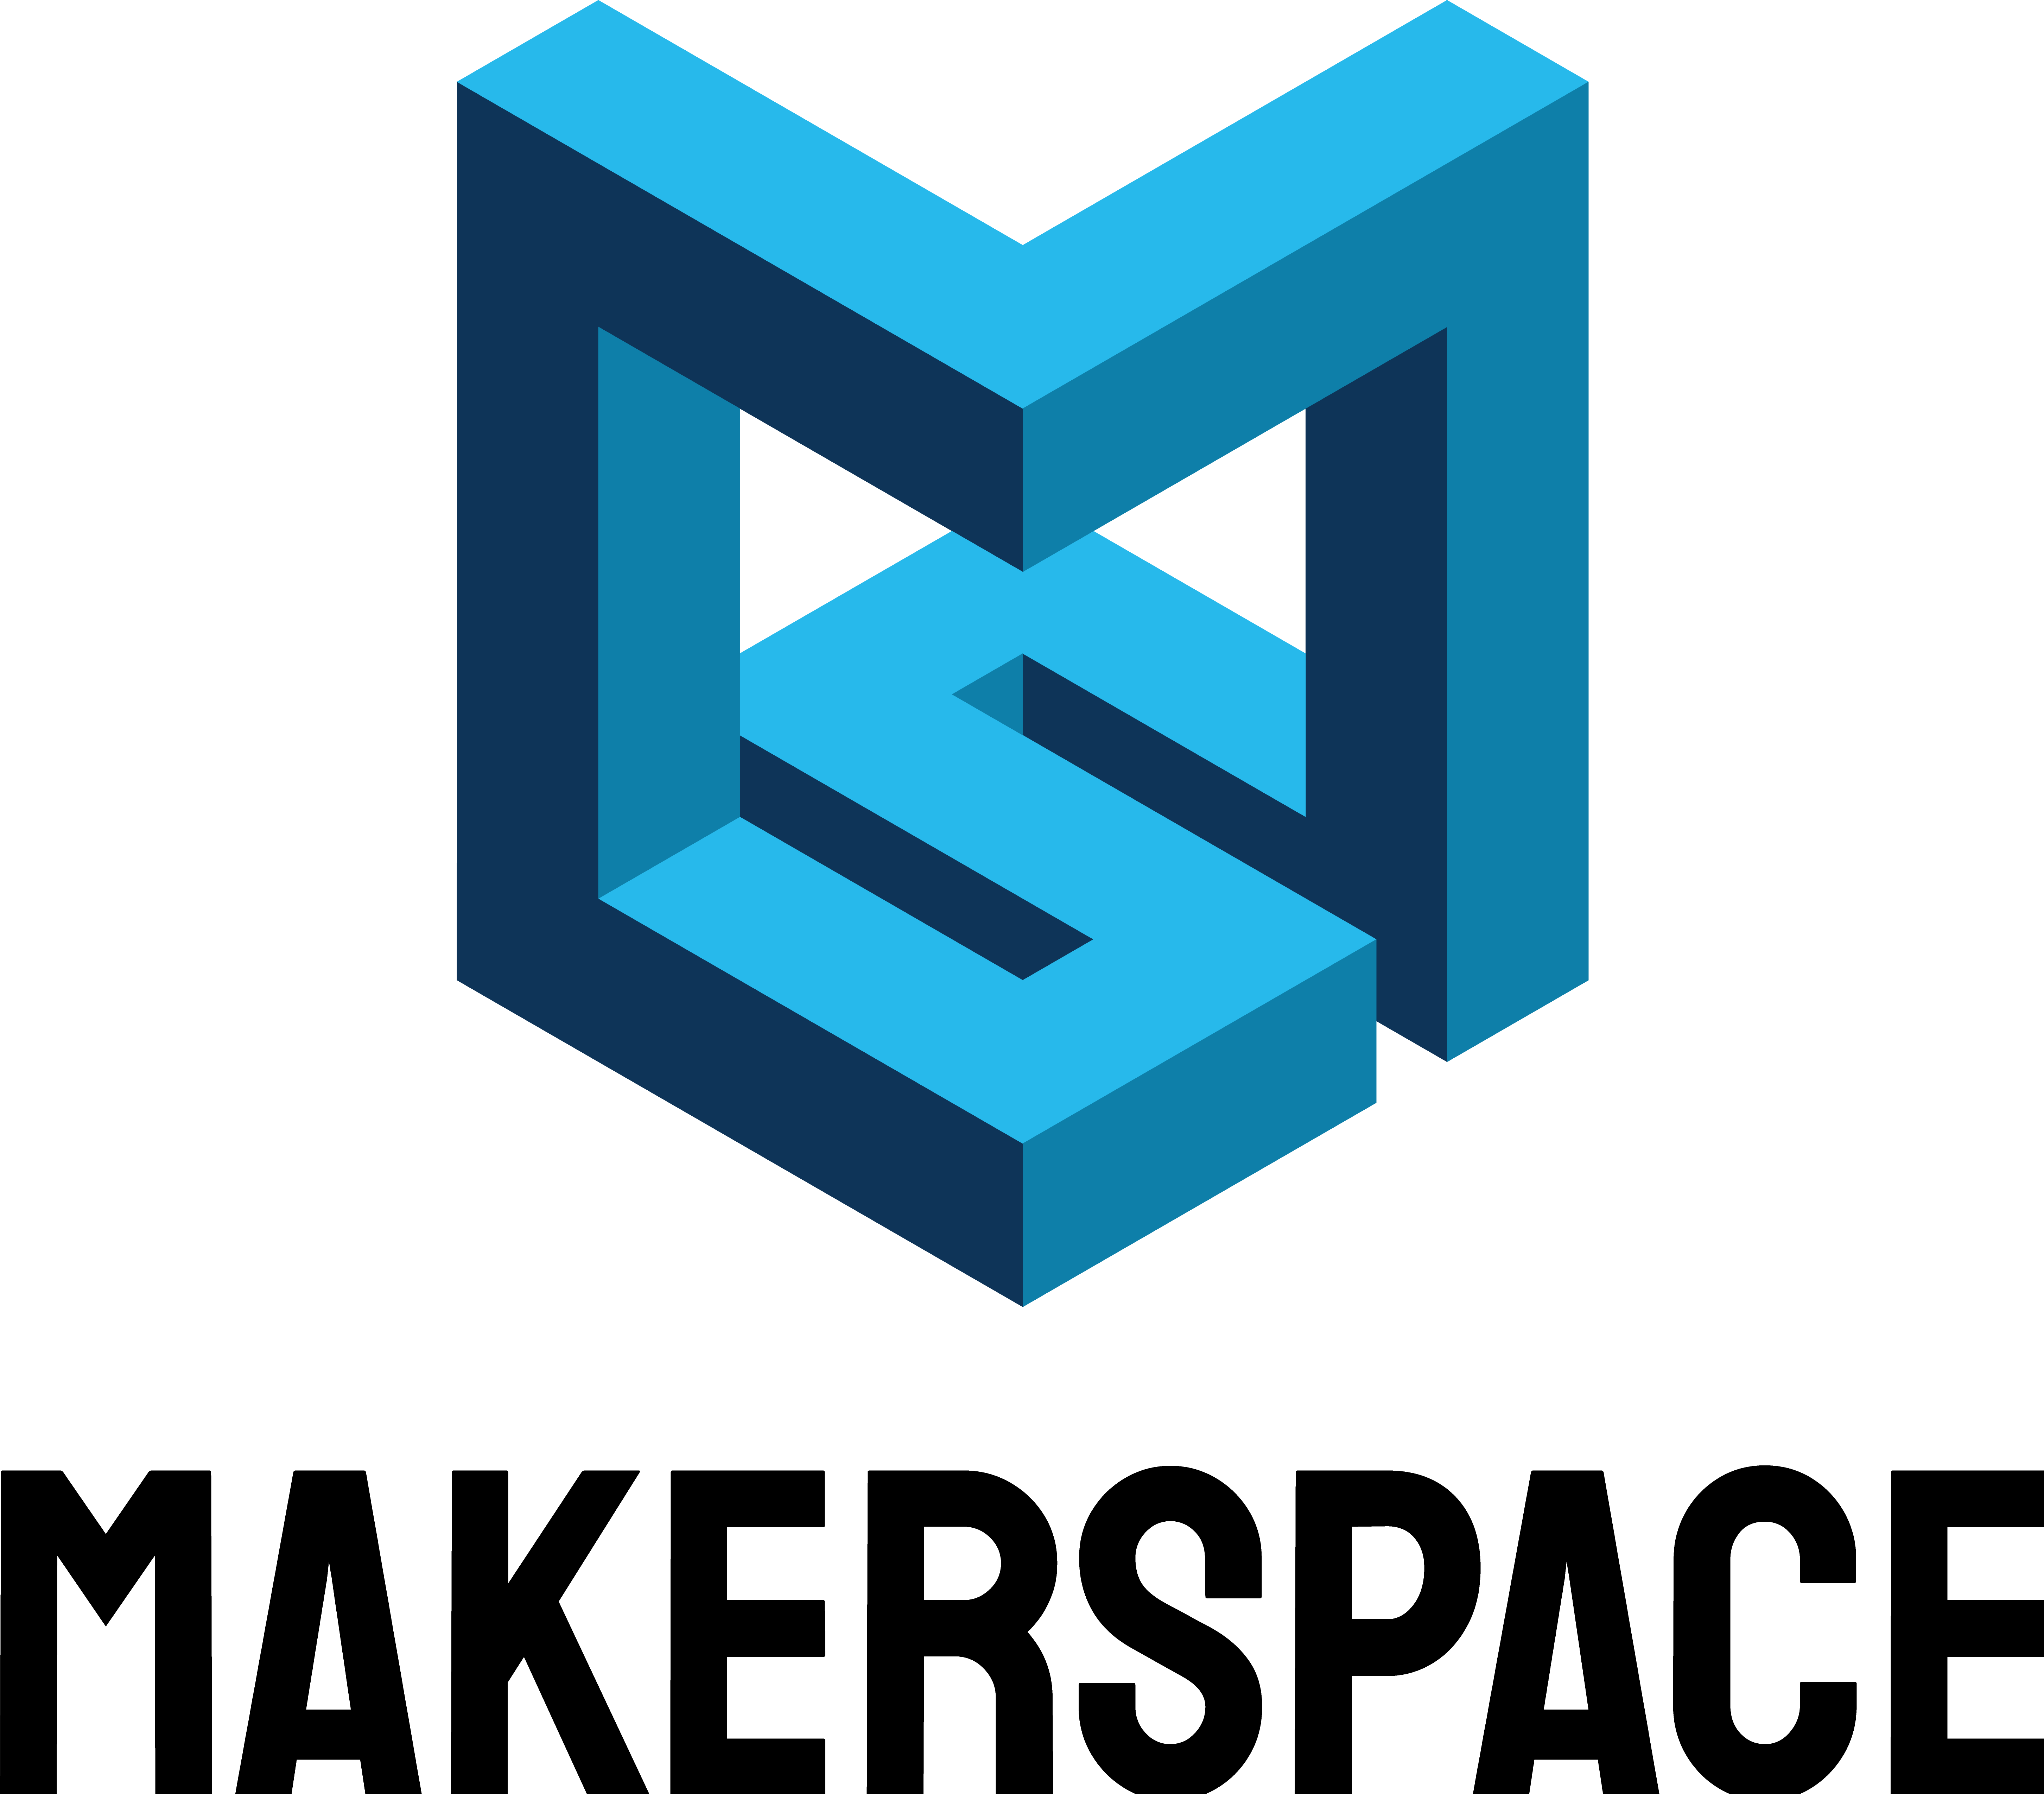 Blå Makerspace logo med svart tekst, vertikal